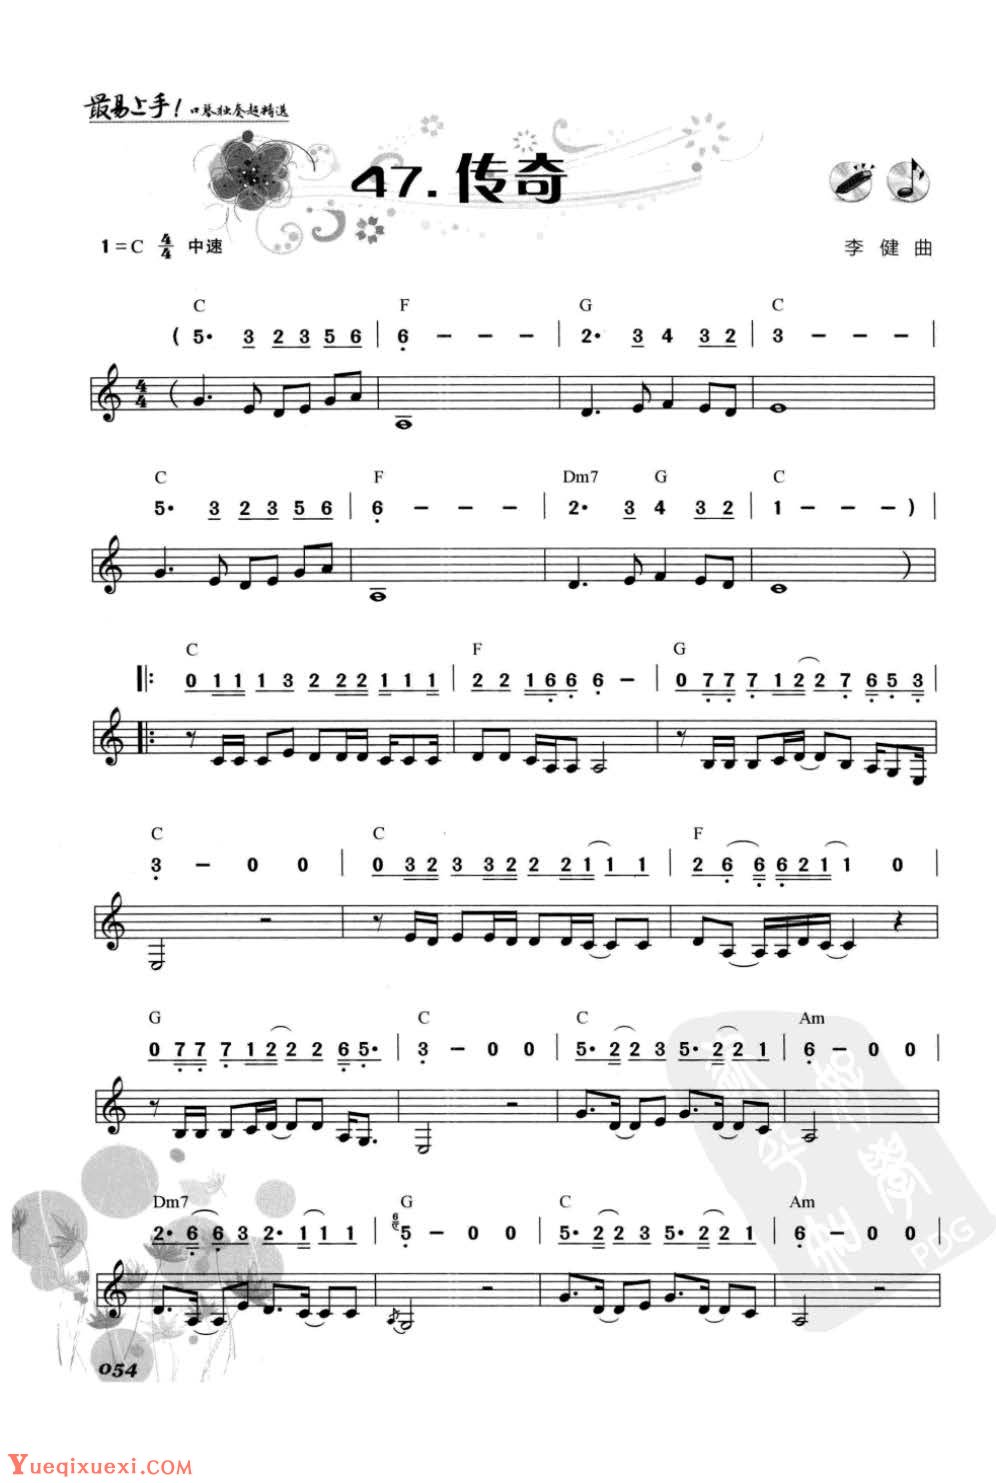 口琴华语流行歌曲《传奇》简谱与五线谱对照